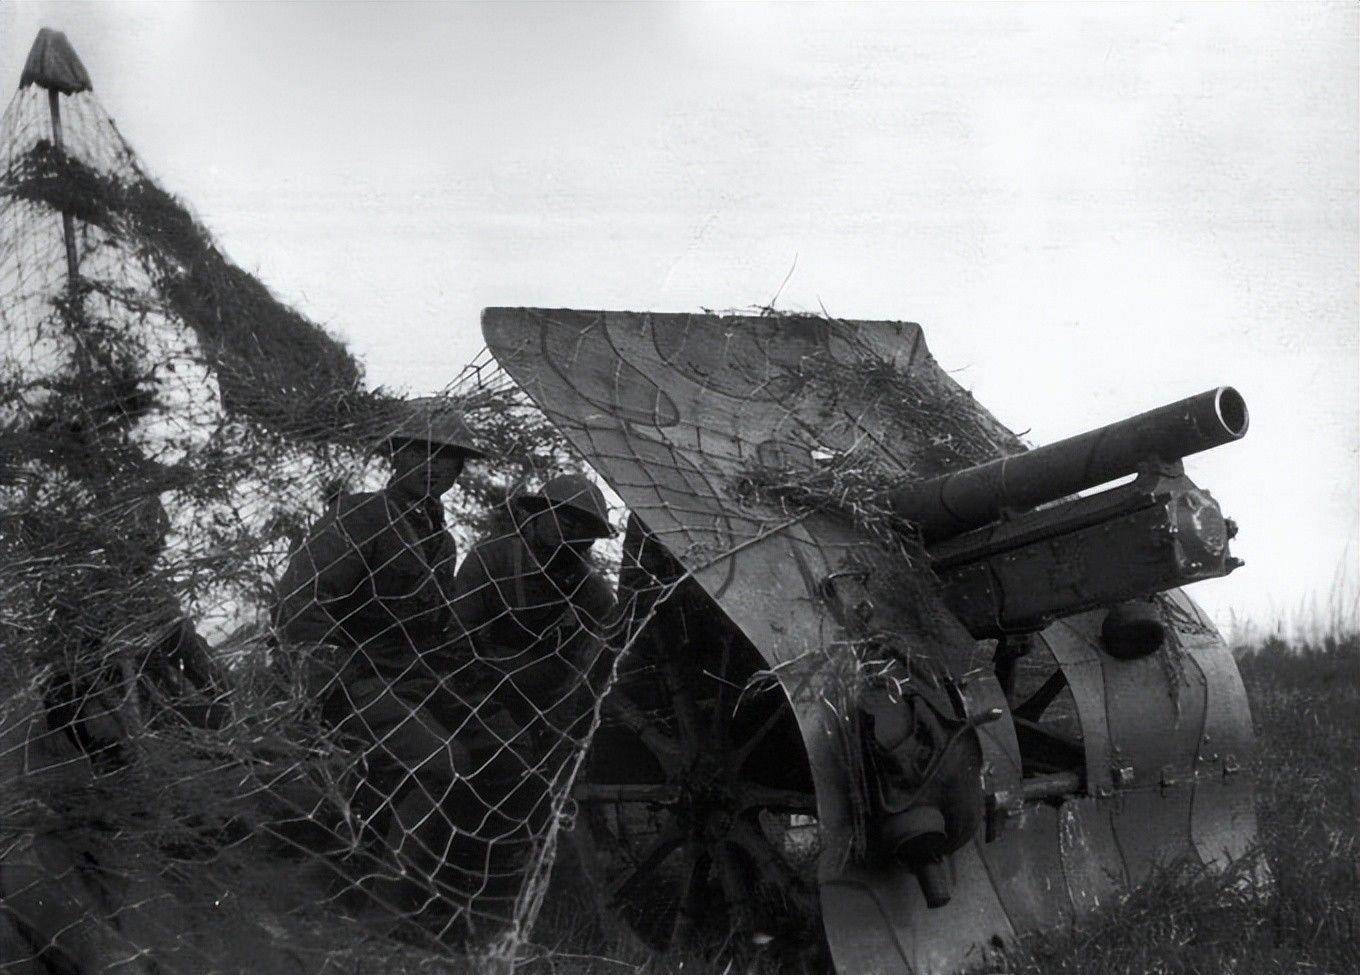 抗战国军最优秀的山炮博福斯m1922型75毫米:萨沙兵器图谱第278期